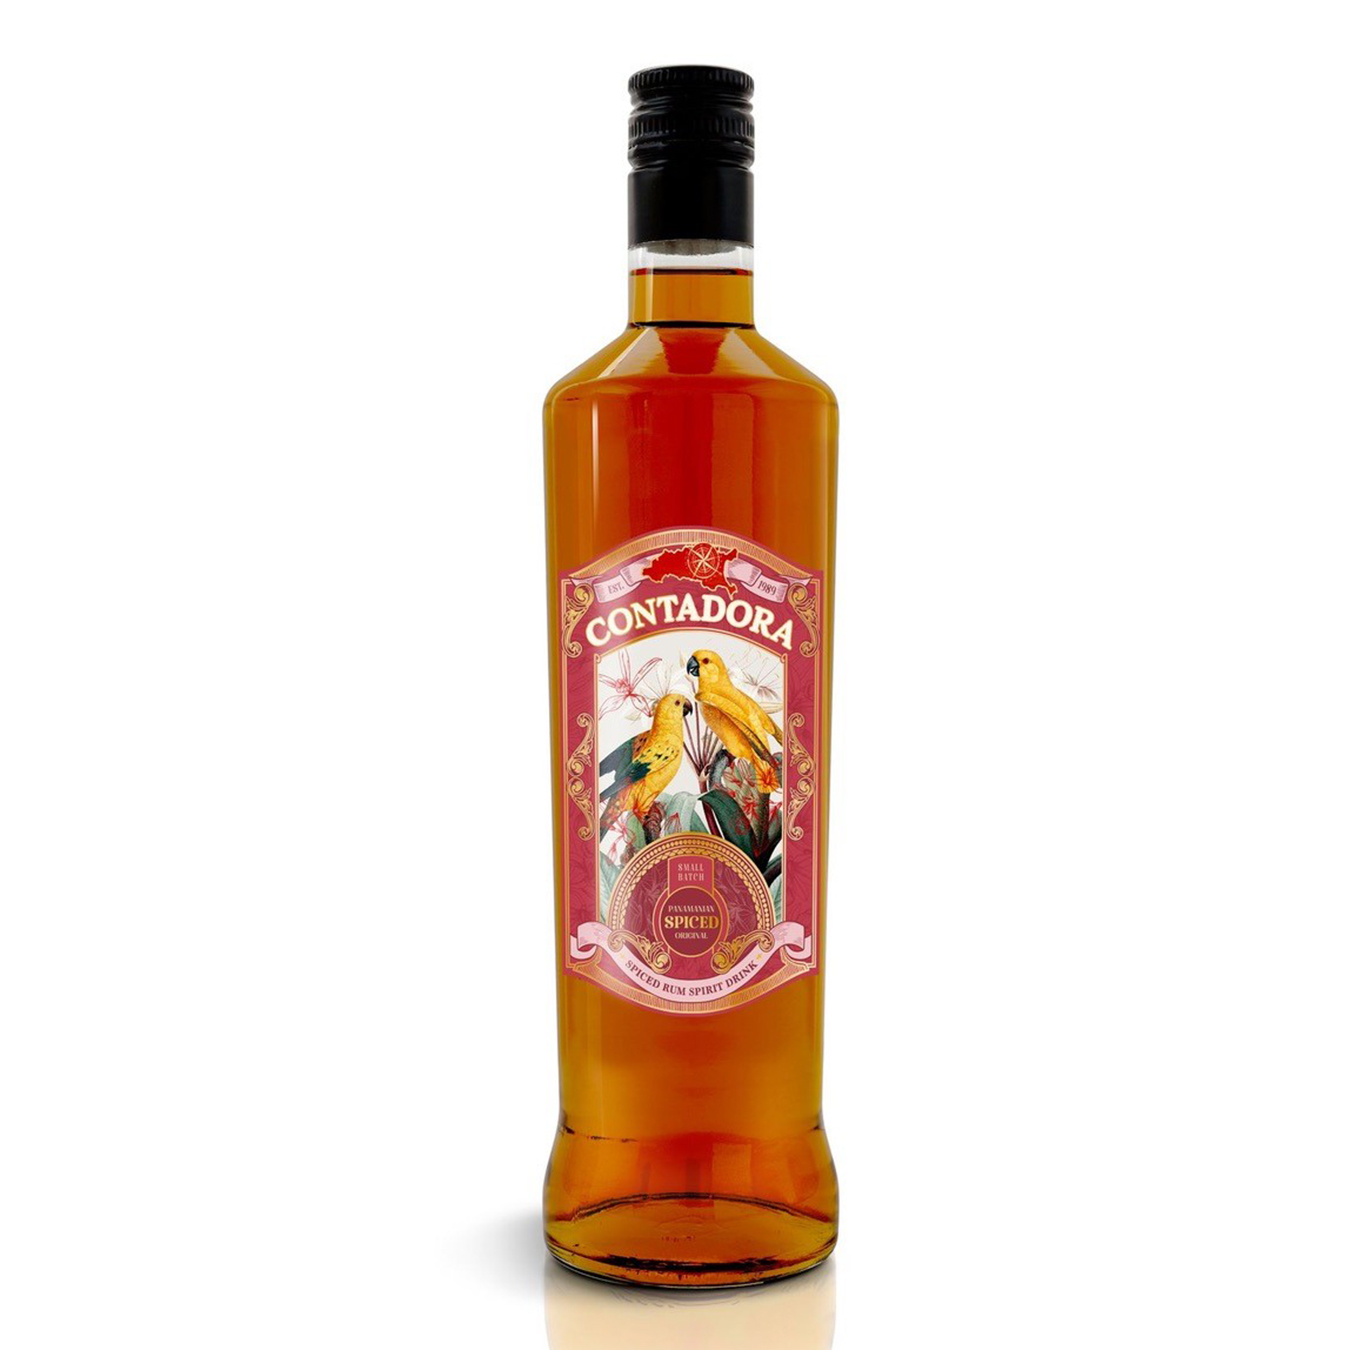 Напиток алкогольный Contadora Spiced на основе рома 35% 0,7л